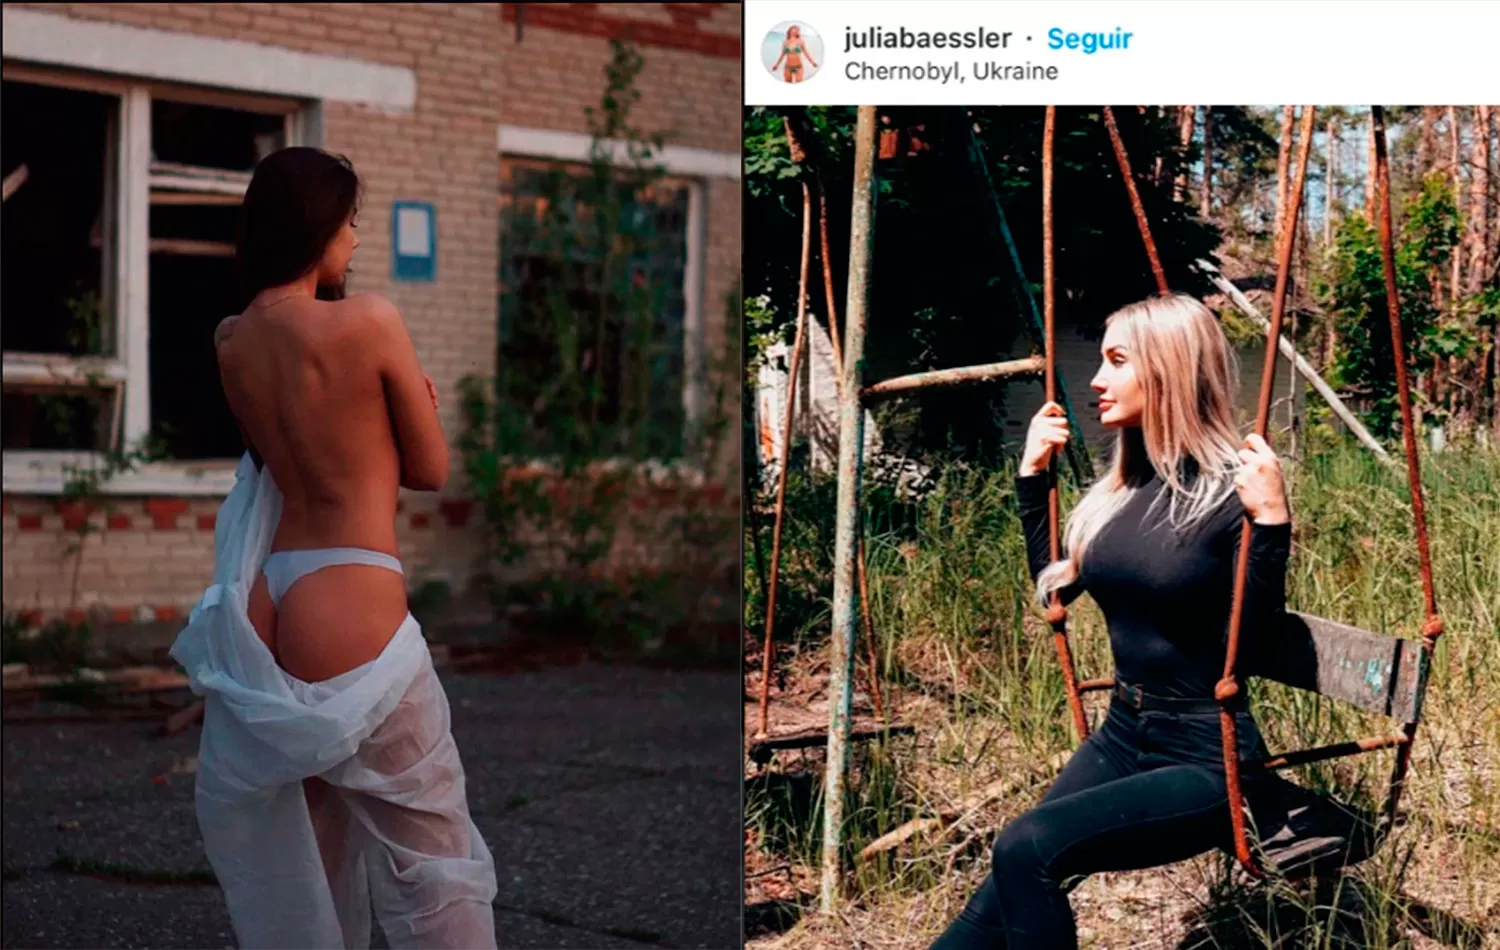 Las instagramers @nz.nik y @juliabaessler cayeron en la tentación de sacarse fotos sensuales en Chernobyl